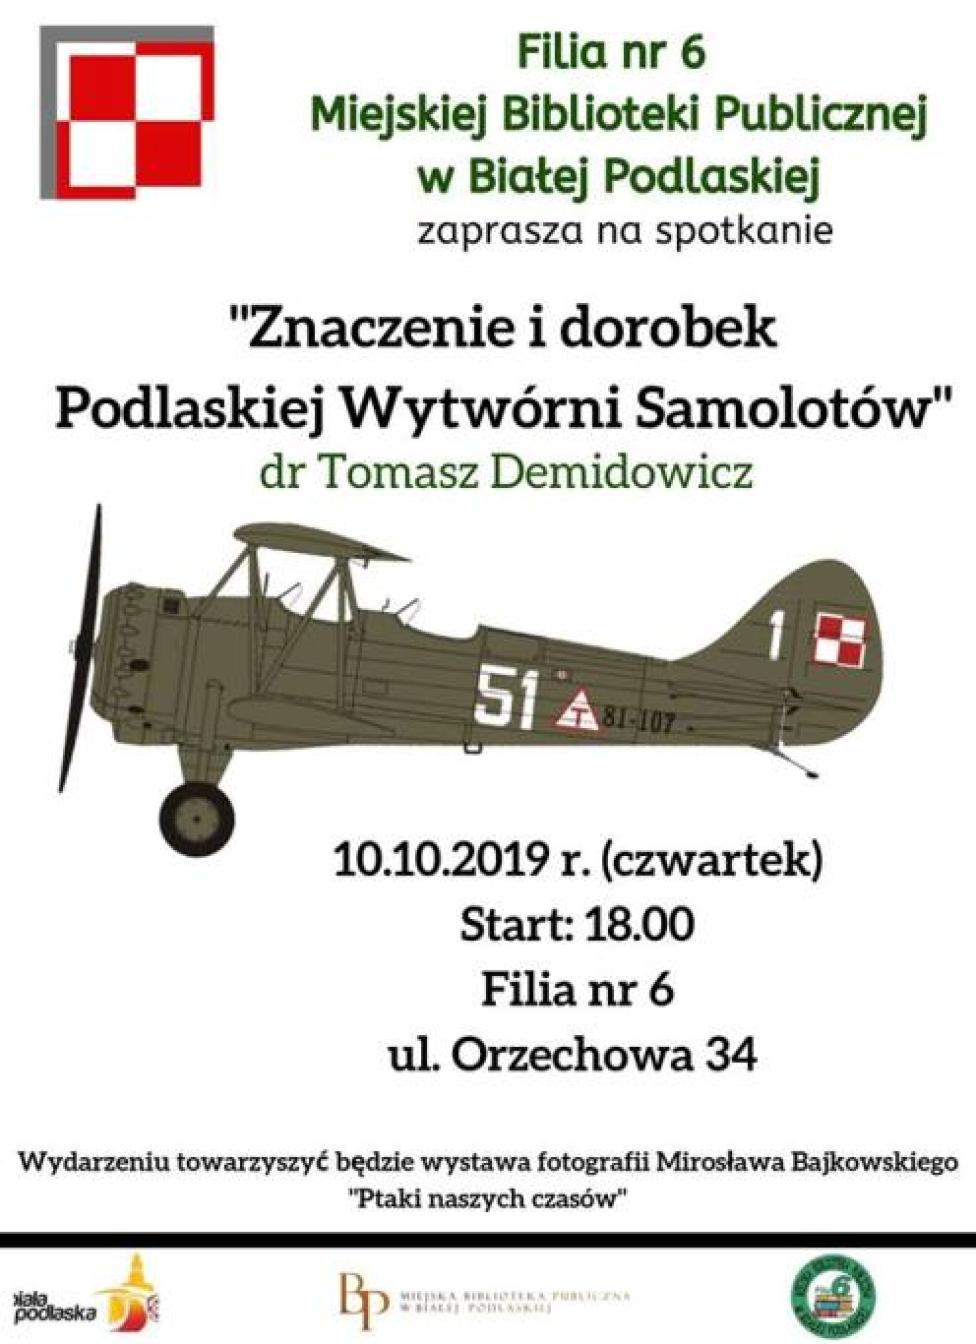 Spotkanie „Znaczenie i dorobek Podlaskiej Wytwórni Samolotów” (fot. mbp.org.pl)